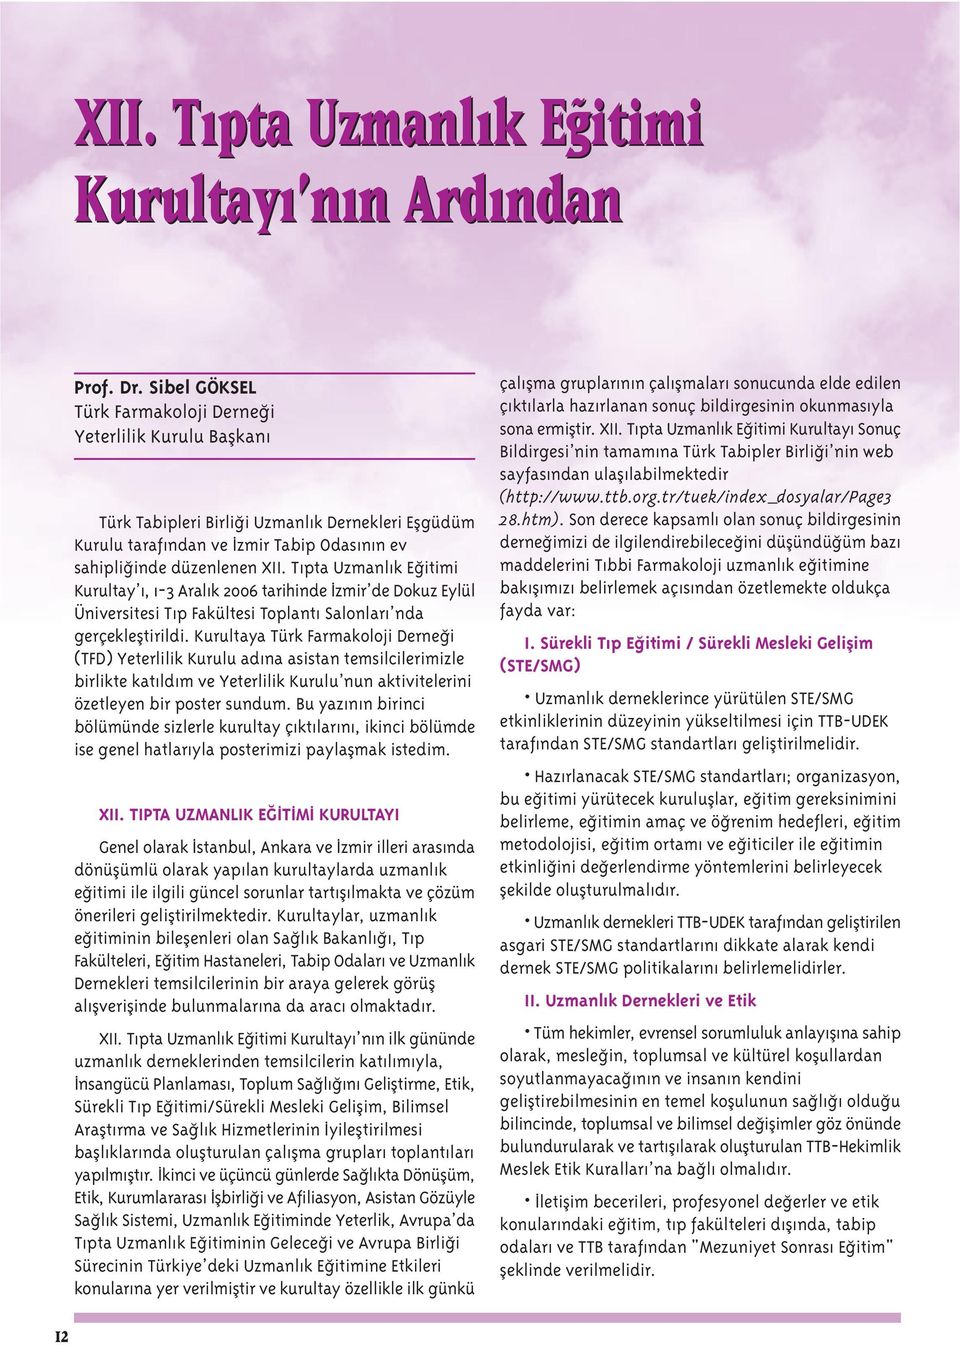 T pta Uzmanl k E itimi Kurultay, 1-3 Aral k 2006 tarihinde zmir de Dokuz Eylül Üniversitesi T p Fakültesi Toplant Salonlar nda gerçeklefltirildi.